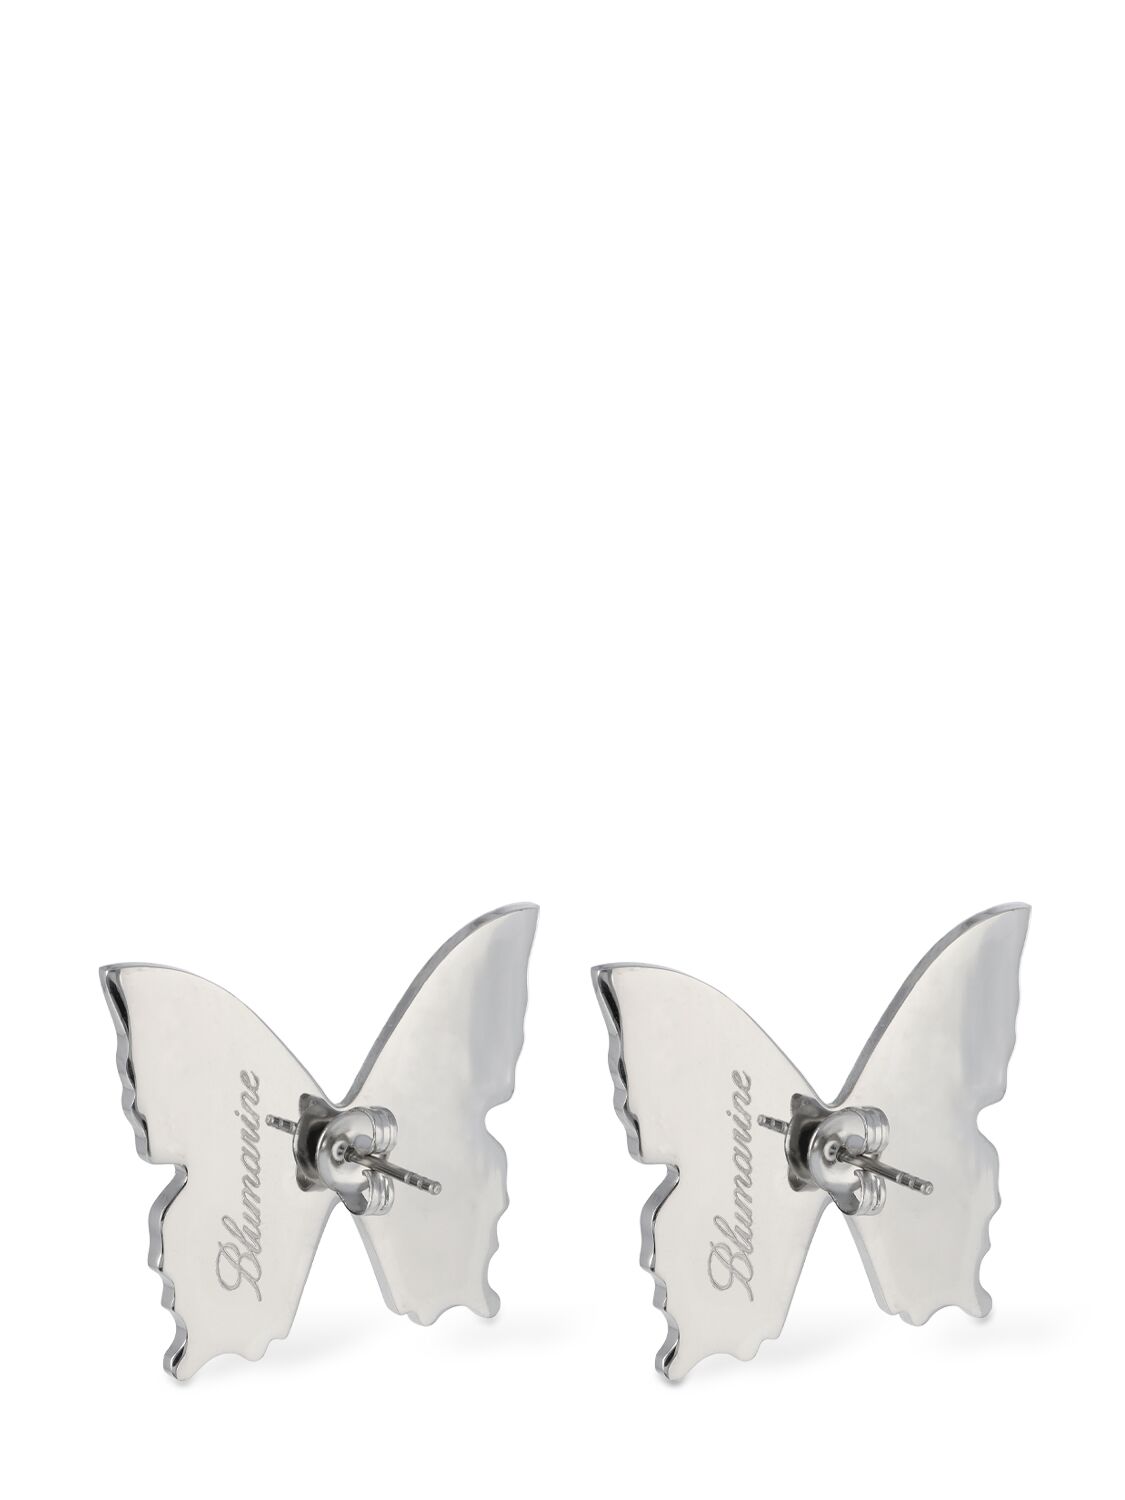 Shop Blumarine Butterfly Crystal Stud Earrings In Silver